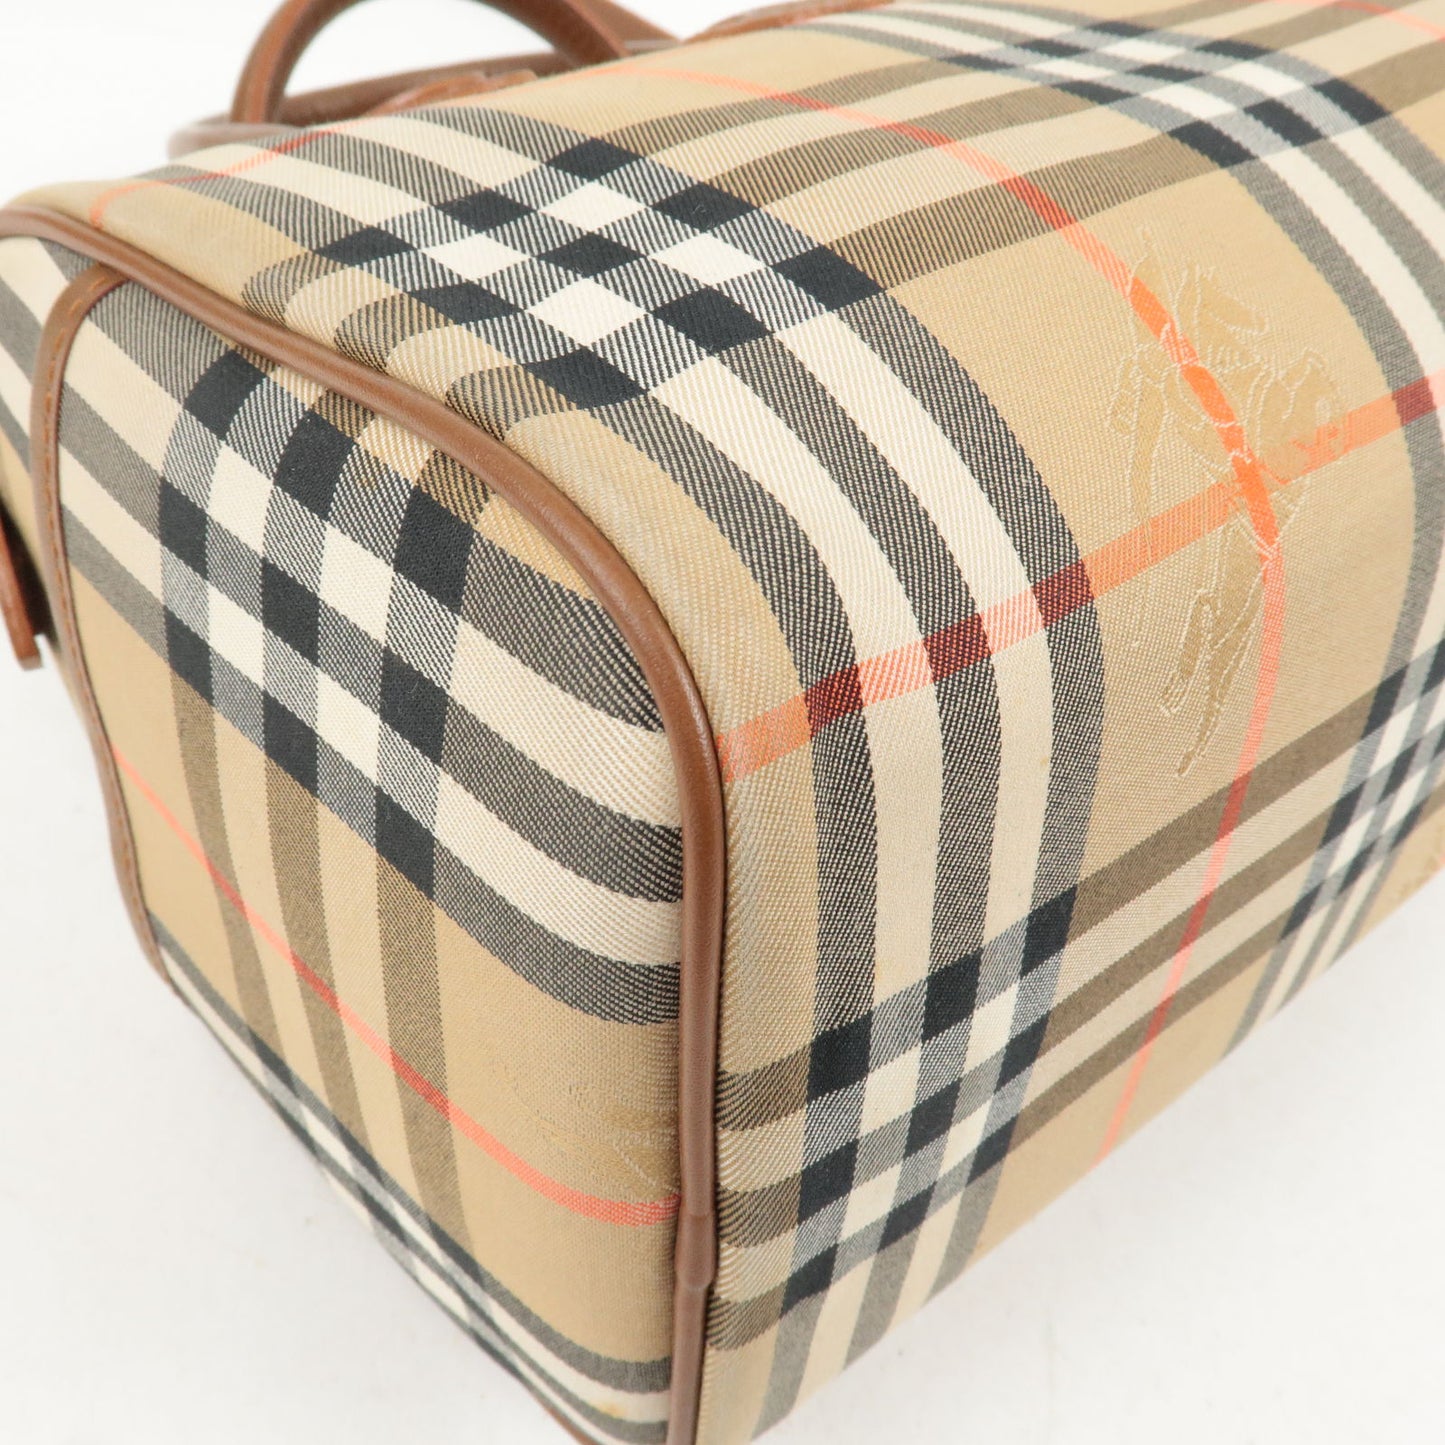 BURBERRY-Nova-Plaid-Nylon-Canvas-Leather-Shoulder-Bag-Beige – dct